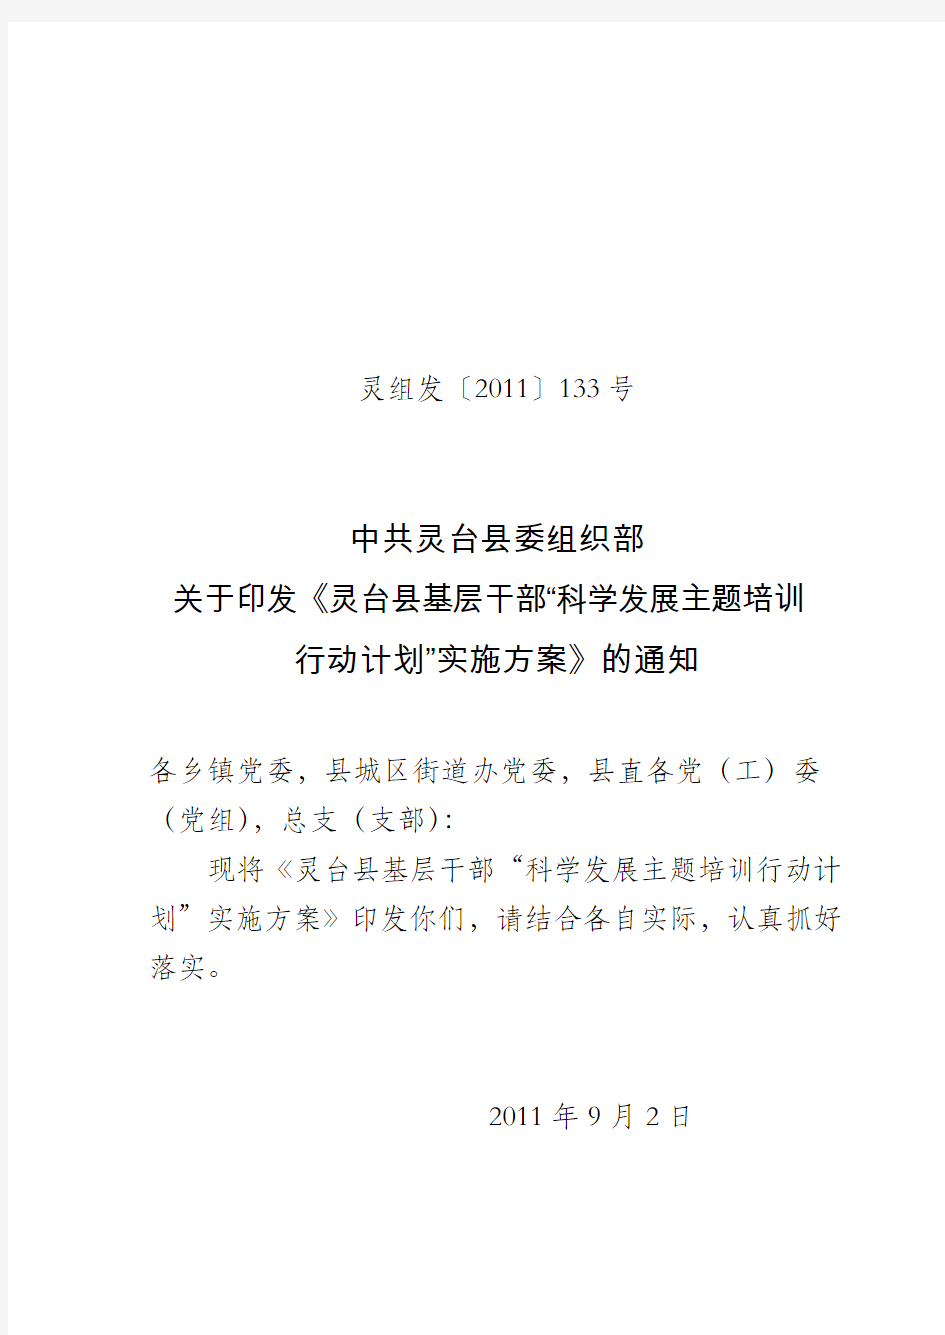 关于印发《灵台县基层干部“科学发展主题培训行动计划”实施方案》的通知 - 副本